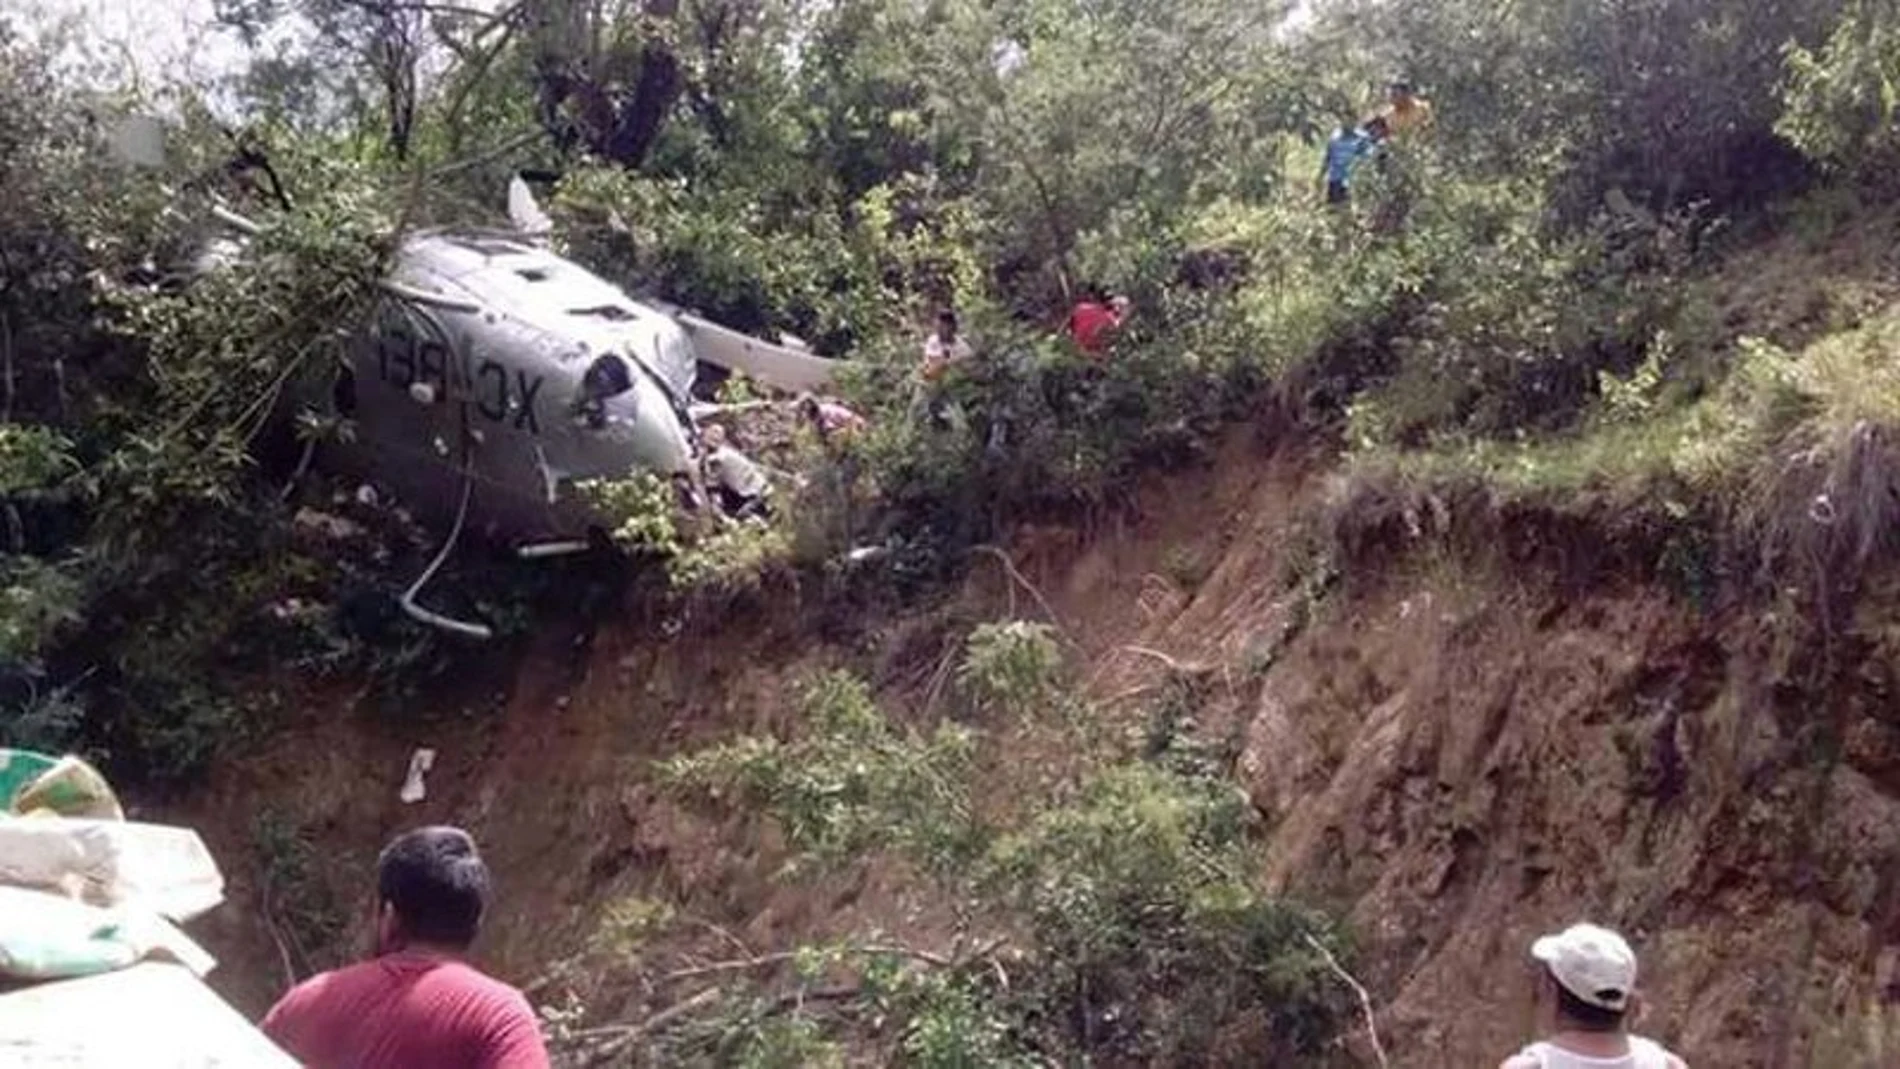 Fotografía cedida por el gobierno del estado de Oaxaca, donde se muestra un helicóptero que se desplomó en el municipio de San Carlos Yautepec